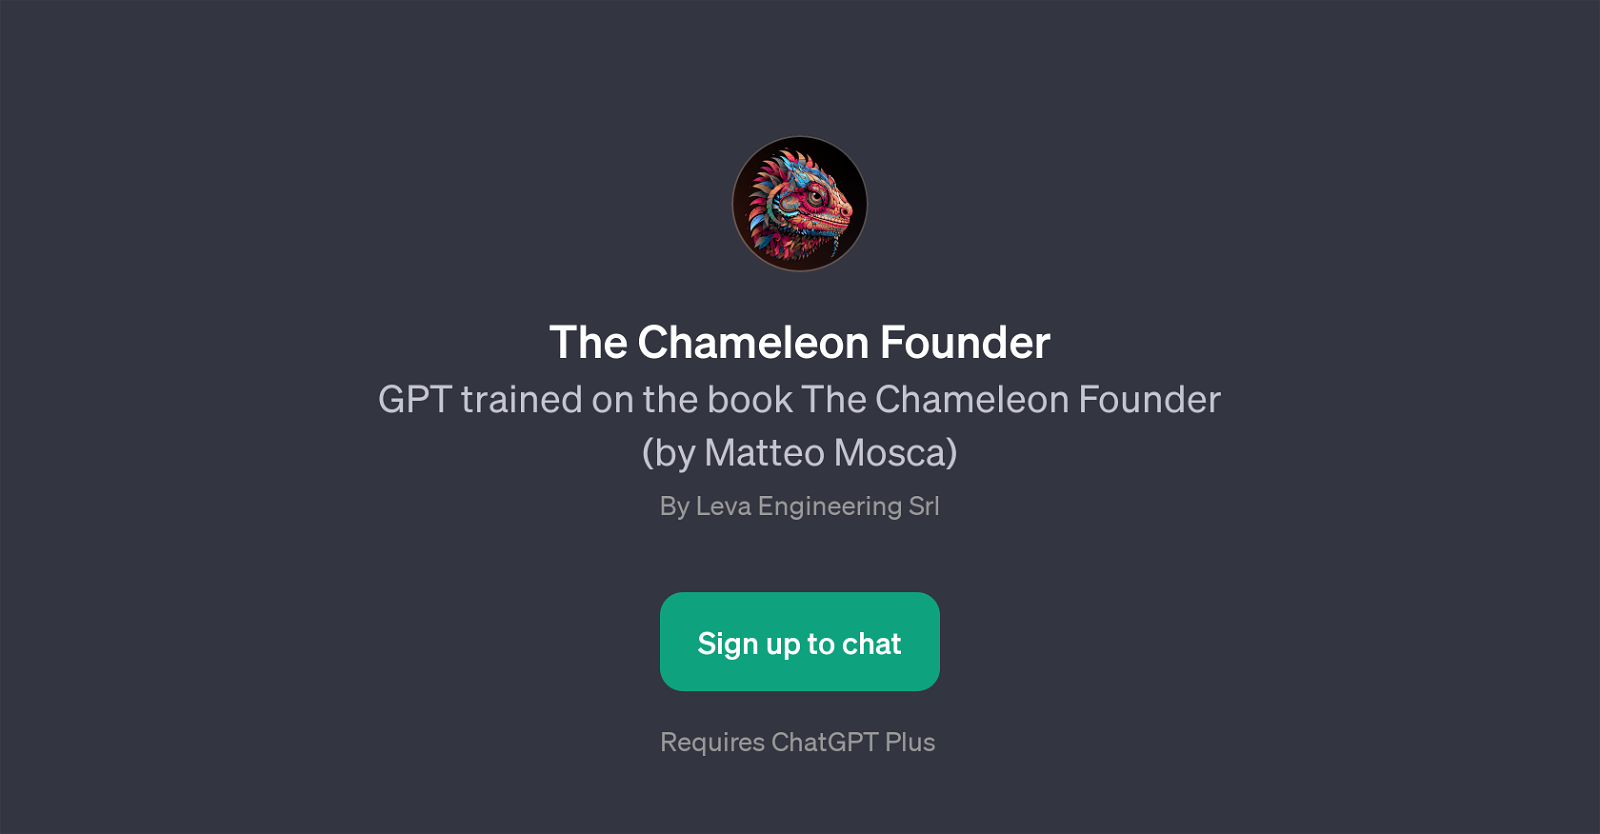 The Chameleon Founder website